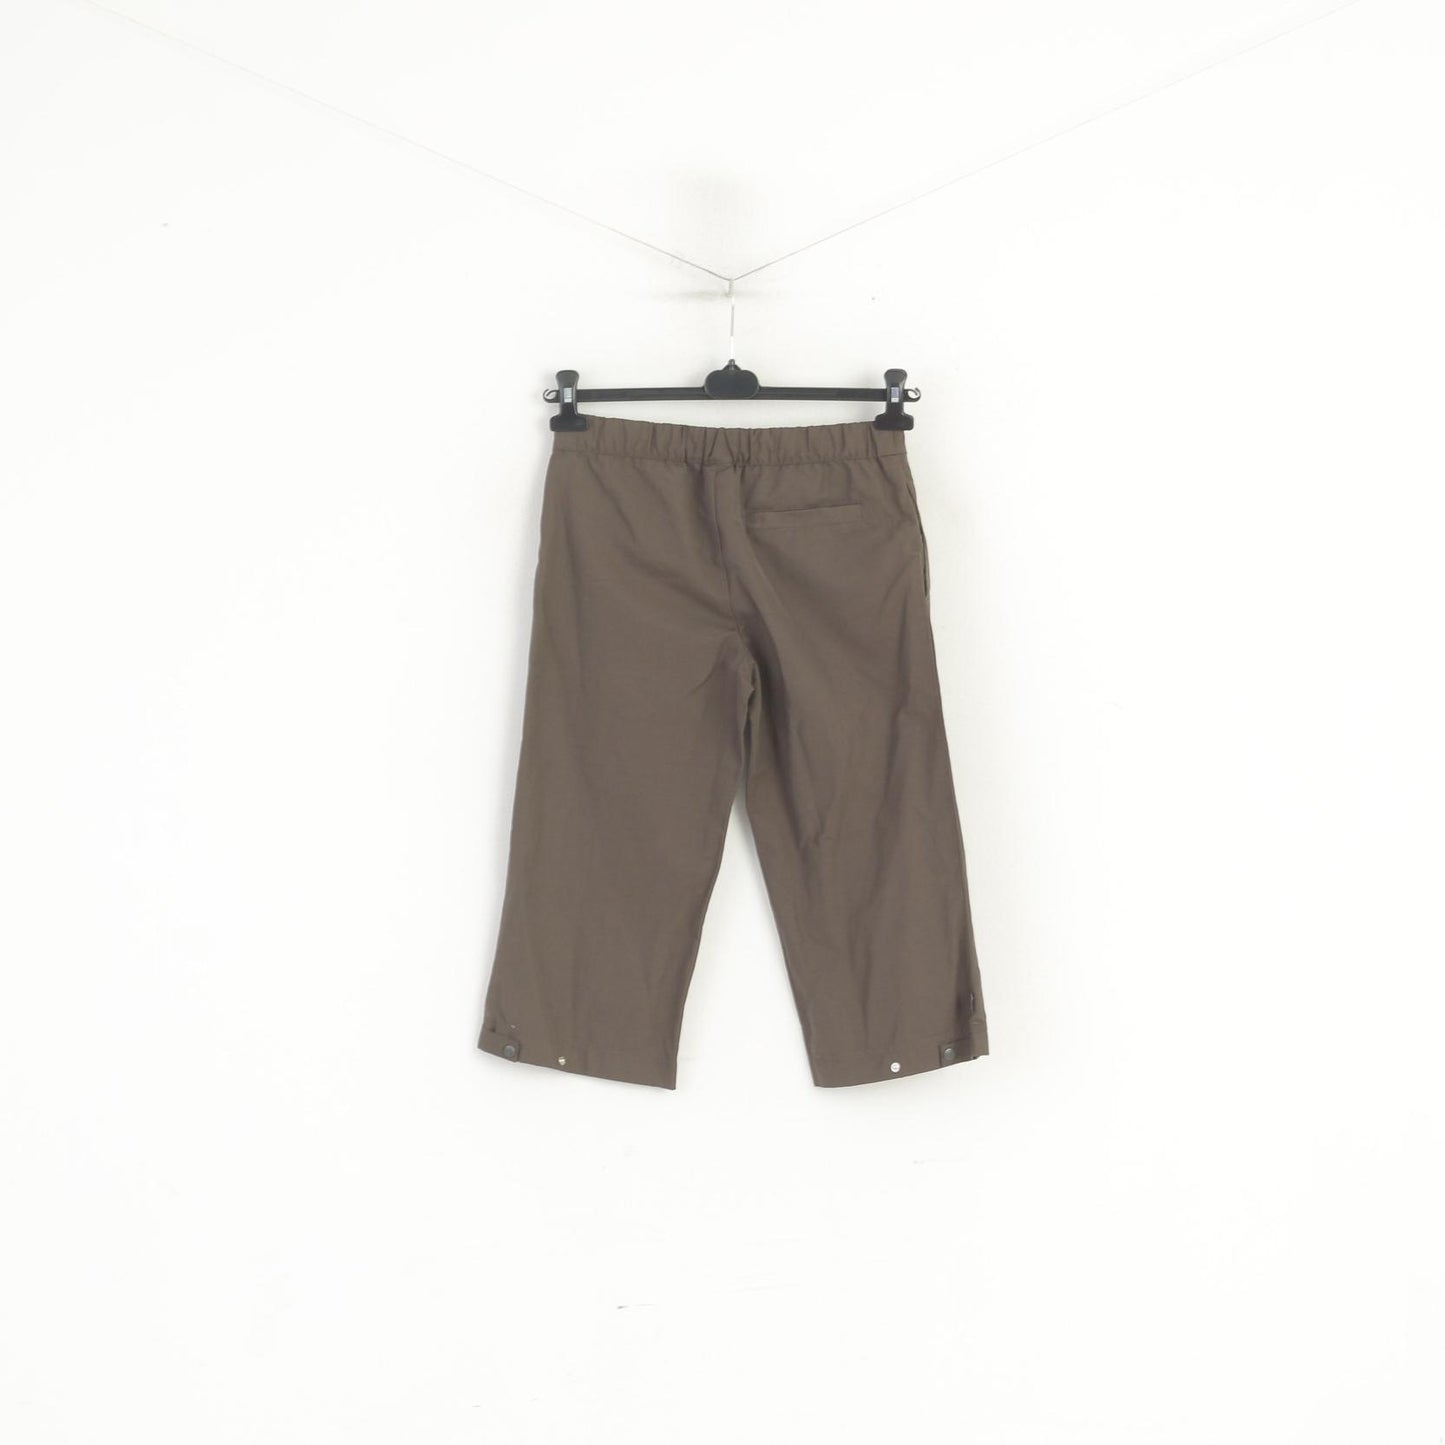 Adidas Donna 8 36 S Pantaloni cropped Marrone Cotone Sportswear Capri